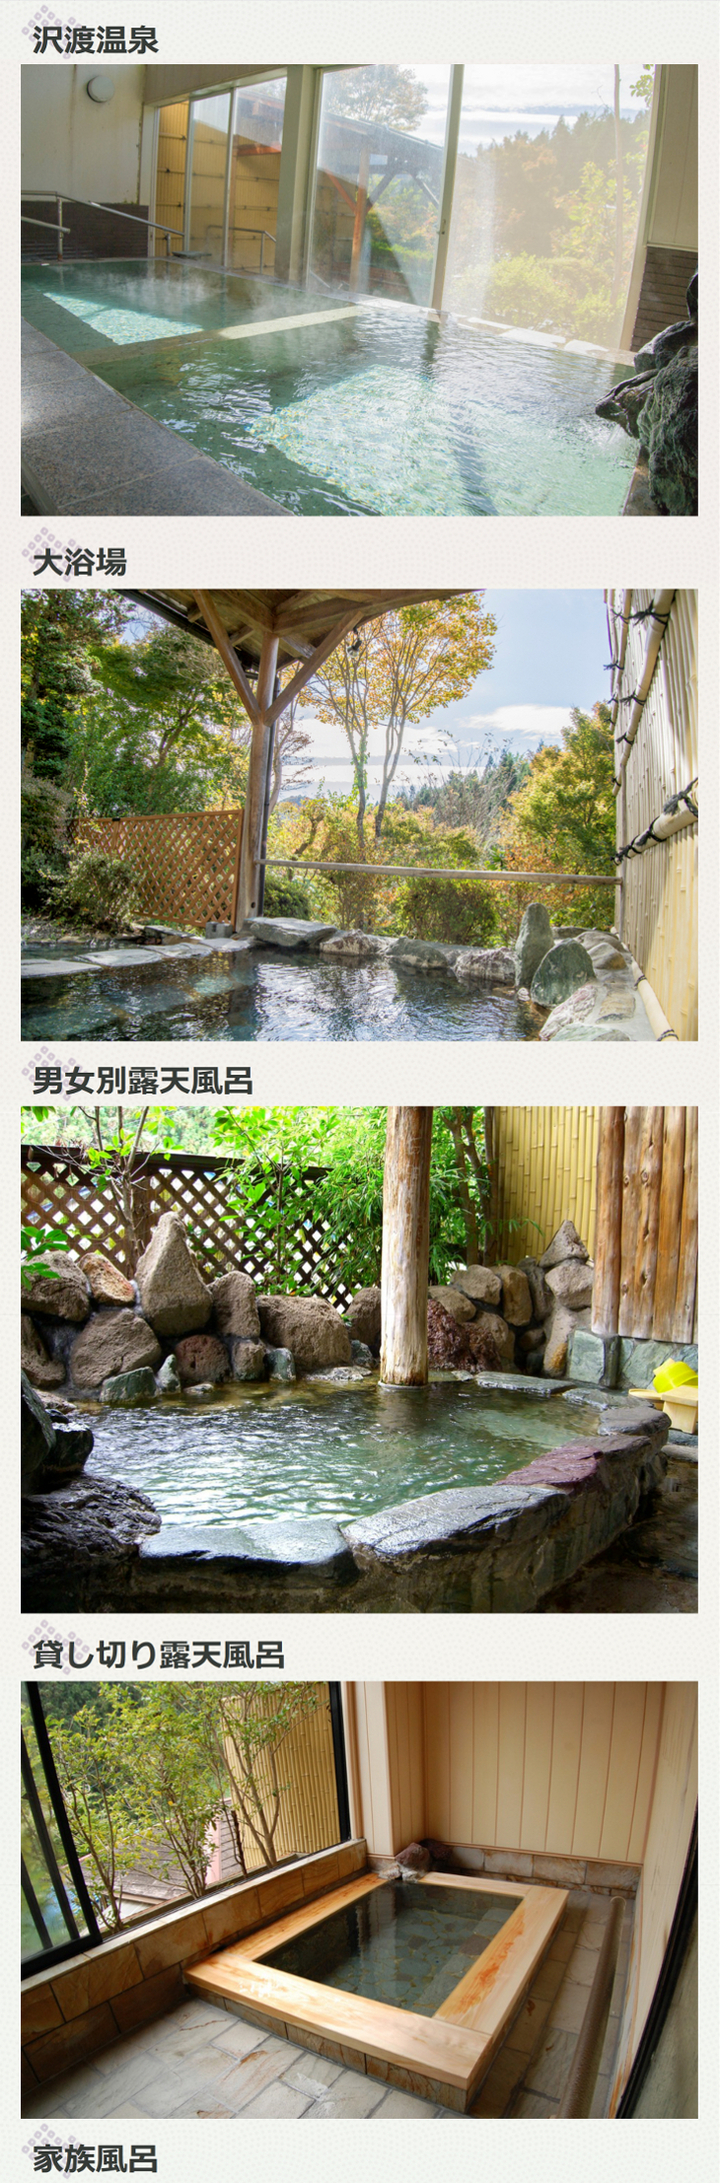 鎌倉時代より湧出する天然温泉